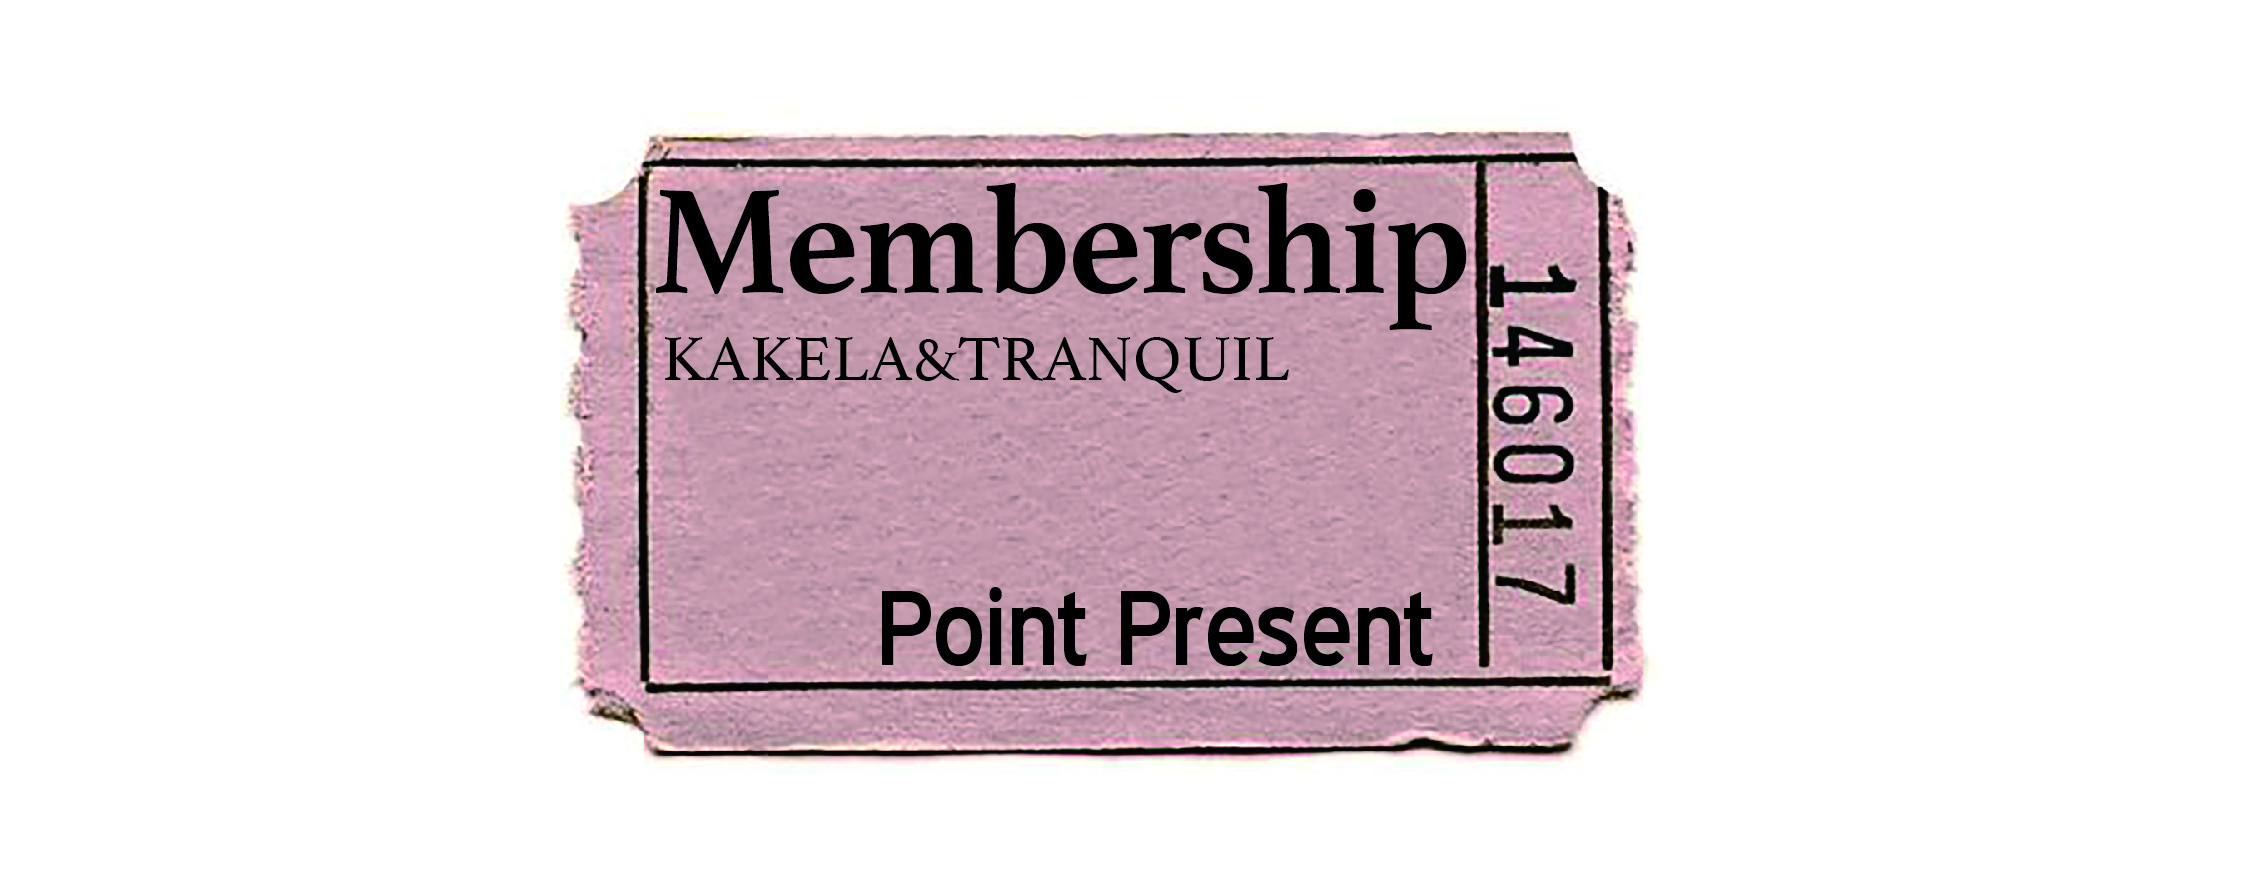 member's card